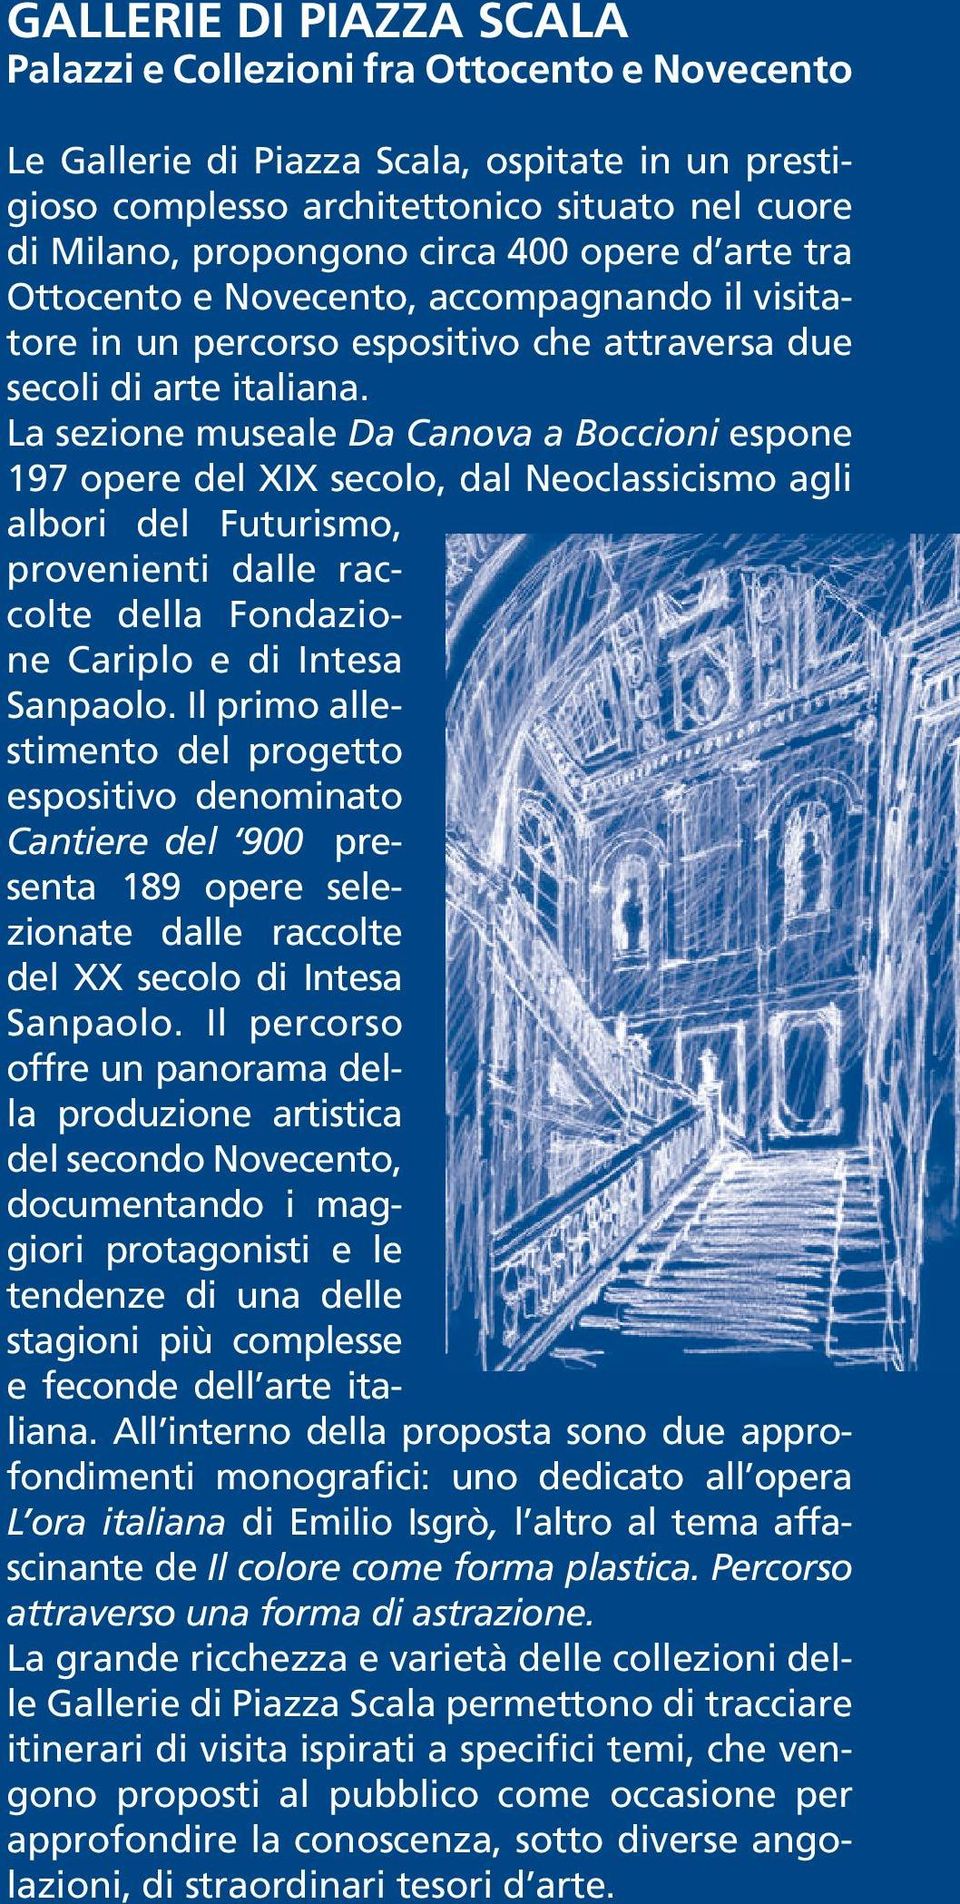 La sezione museale Da Canova a Boccioni espone 197 opere del XIX secolo, dal Neoclassicismo agli albori del Futurismo, provenienti dalle raccolte della Fondazione Cariplo e di Intesa Sanpaolo.